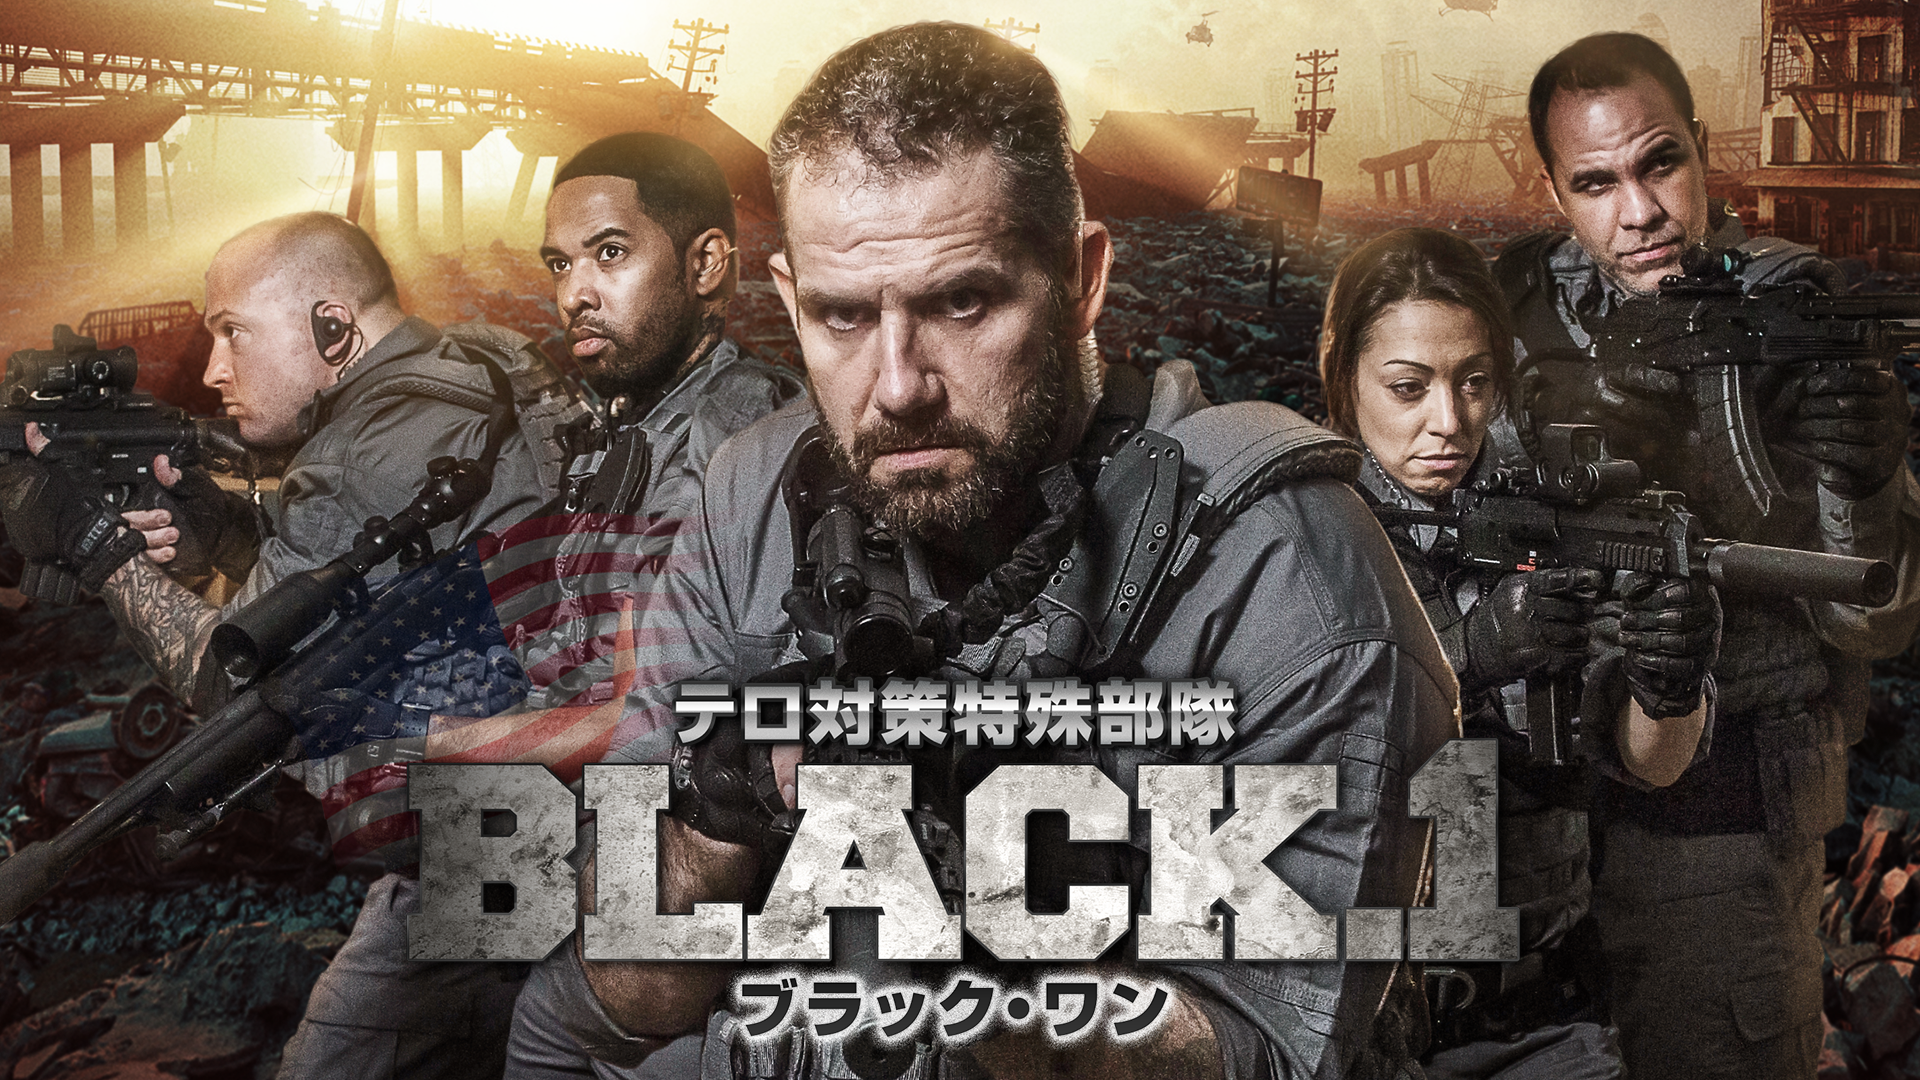 テロ対策特殊部隊 BLACK.1 ブラック・ワン(洋画 / 2015) - 動画配信 | U-NEXT 31日間無料トライアル